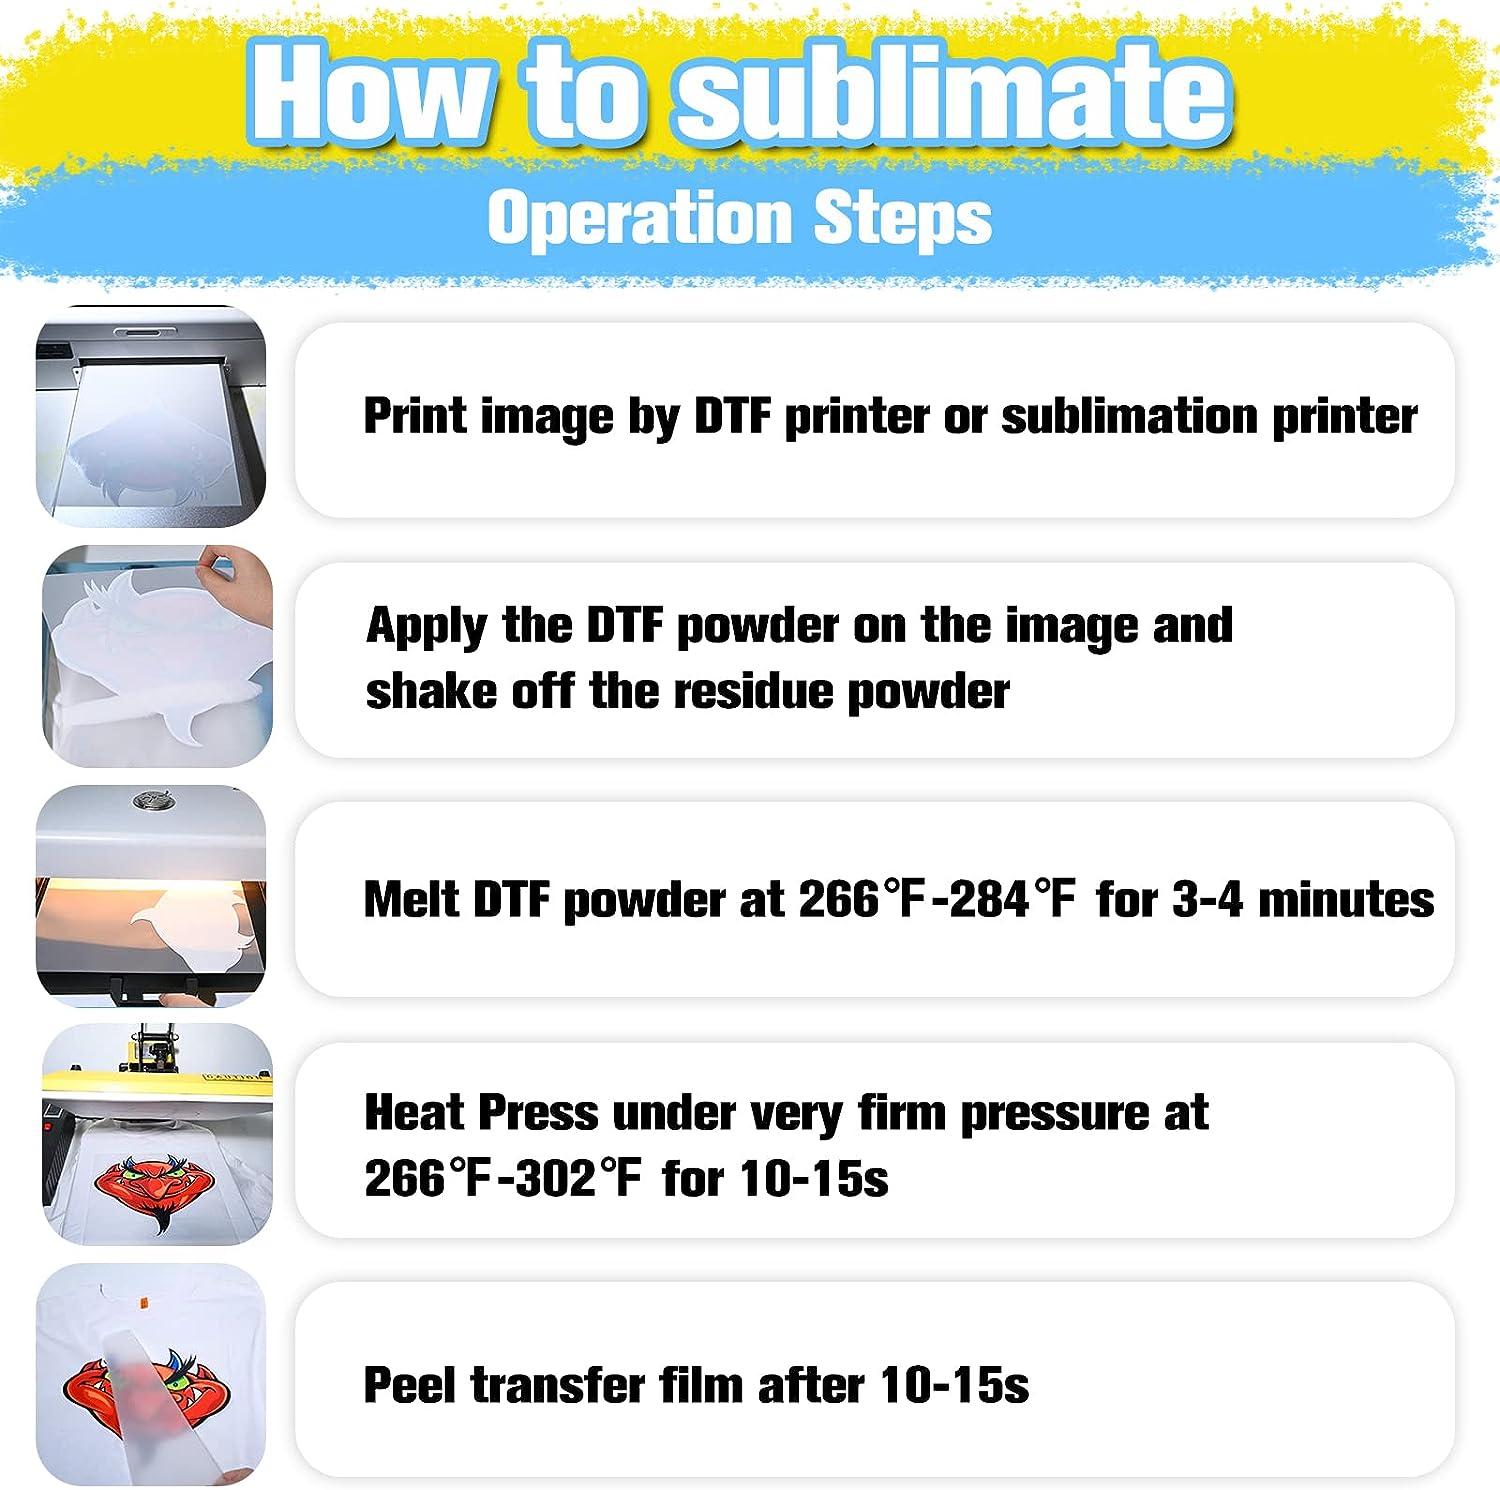 DTF Hot Melt Powder - Dye Sublimation Paper & Sublimation Ink Manufacturer